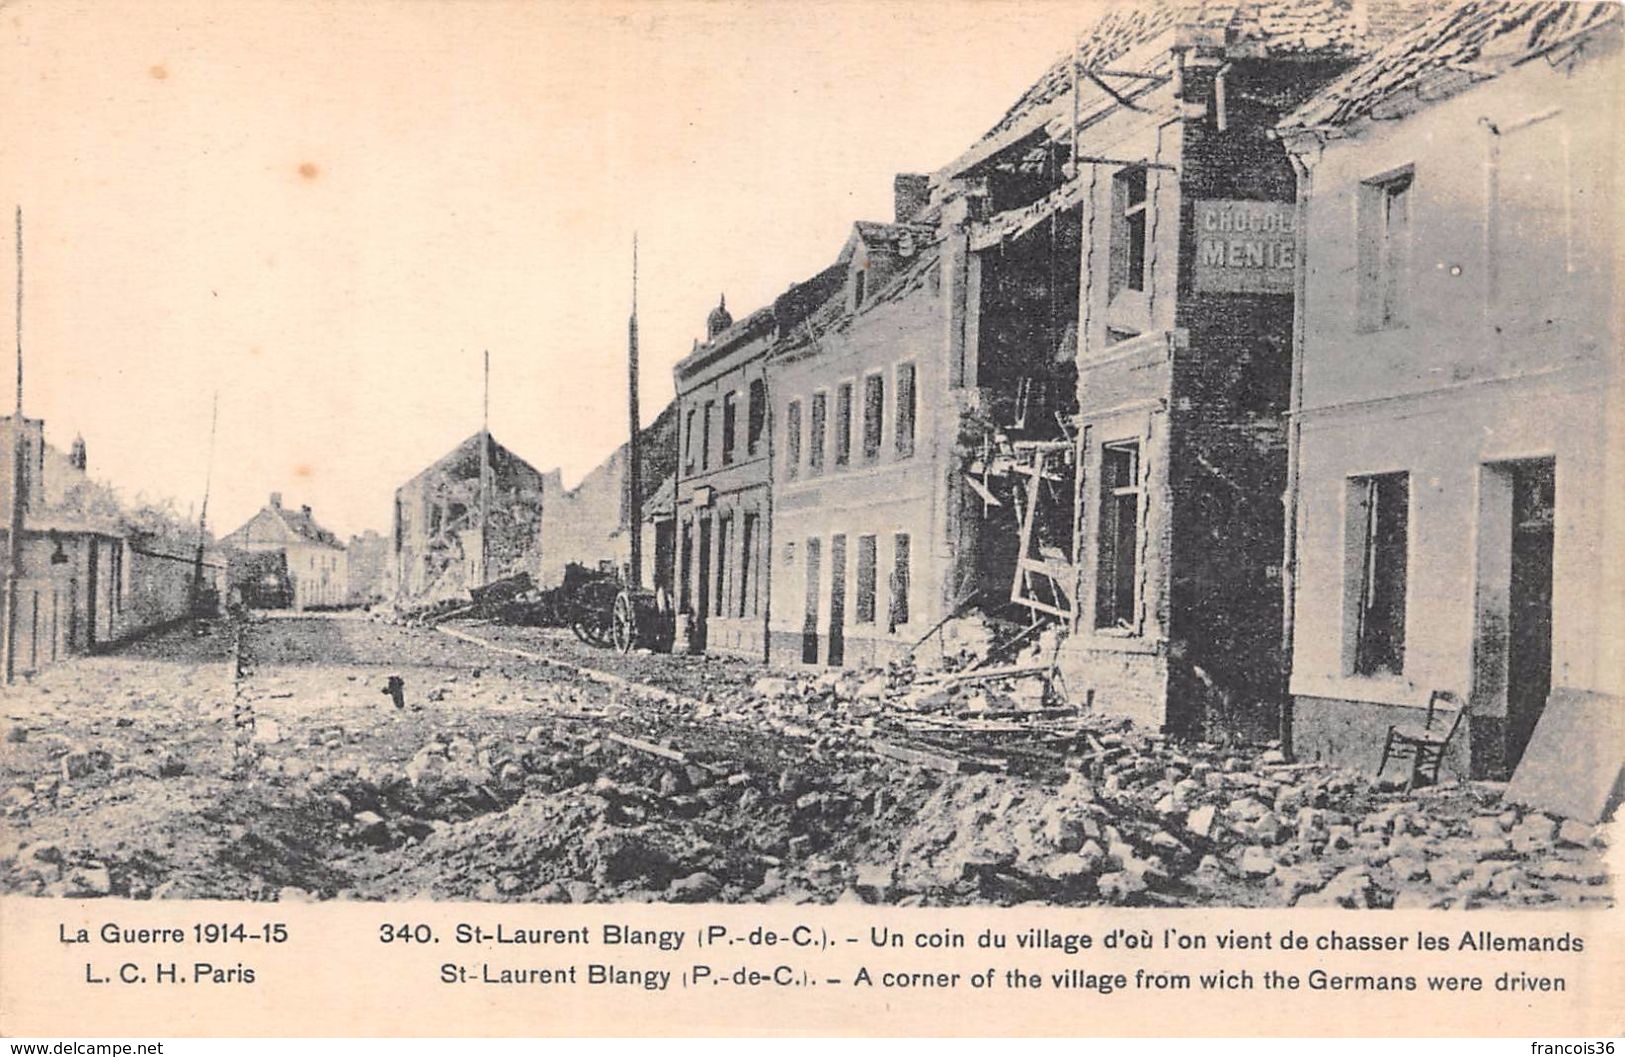 (62) - Lot de 7 CPA de Saint St Laurent Blangy - Pas de Calais - Guerre 1914 1915 - bon état